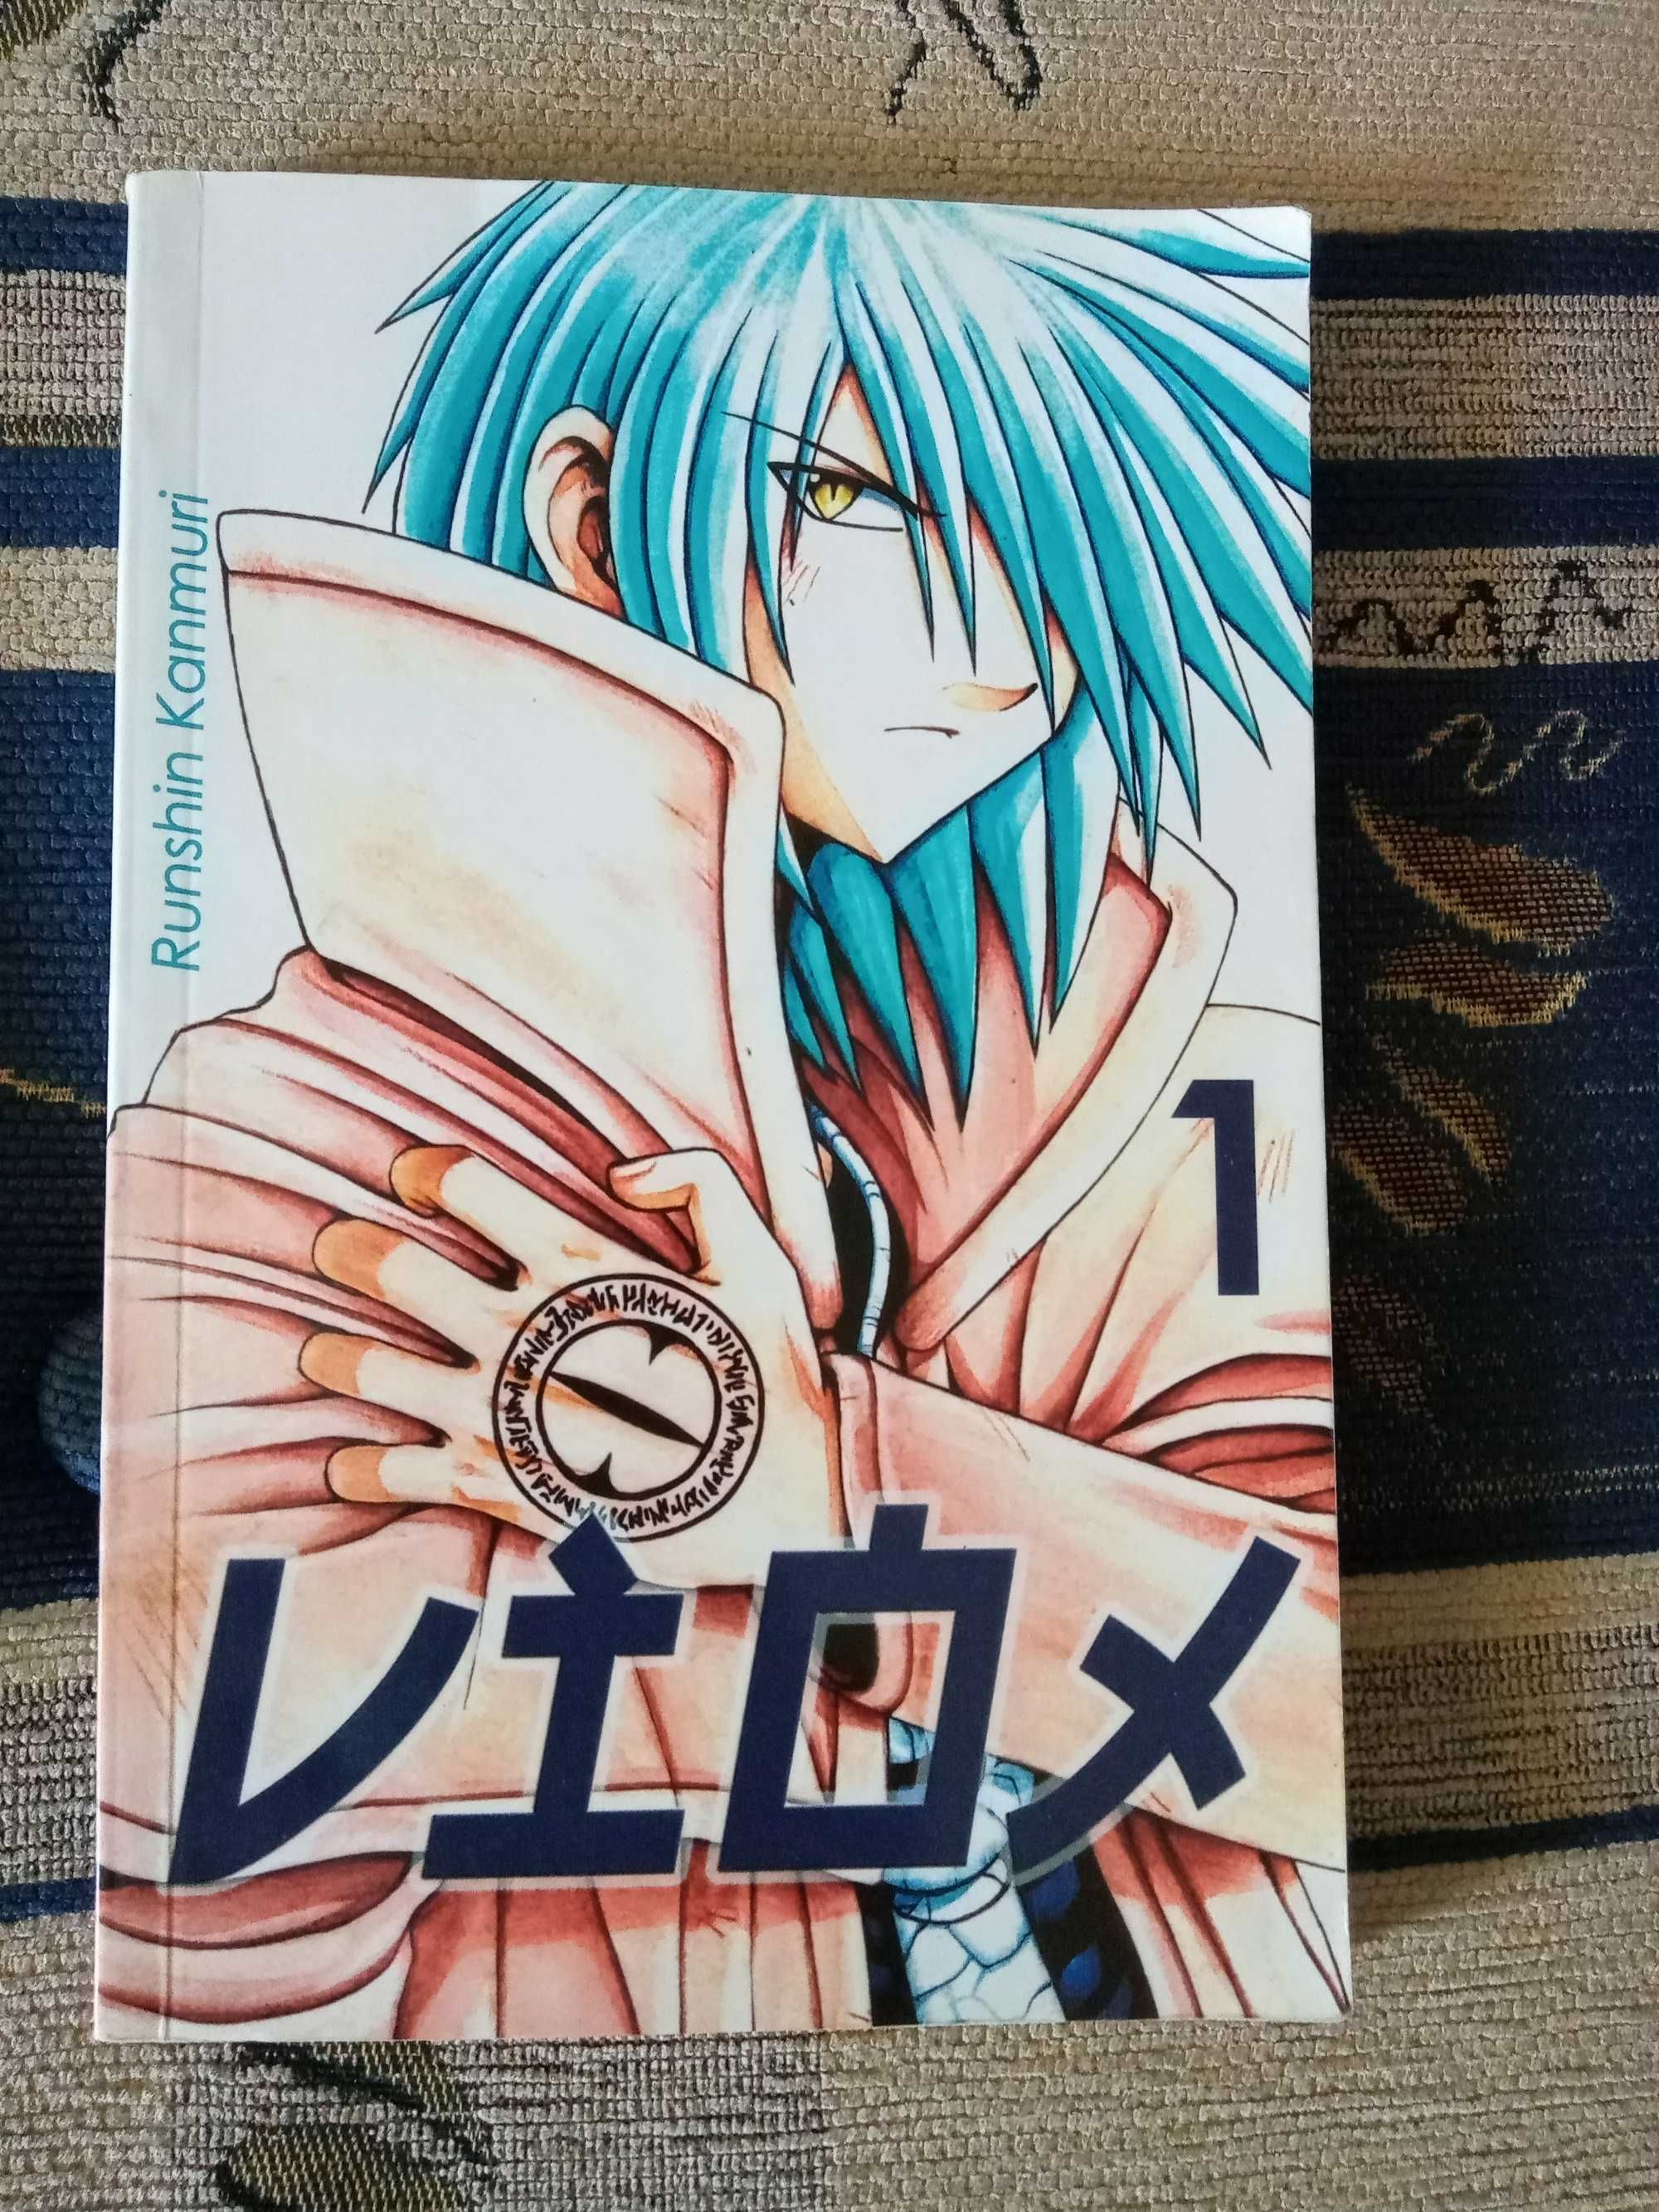 Manga "Viox" 1 Kasen, 15+